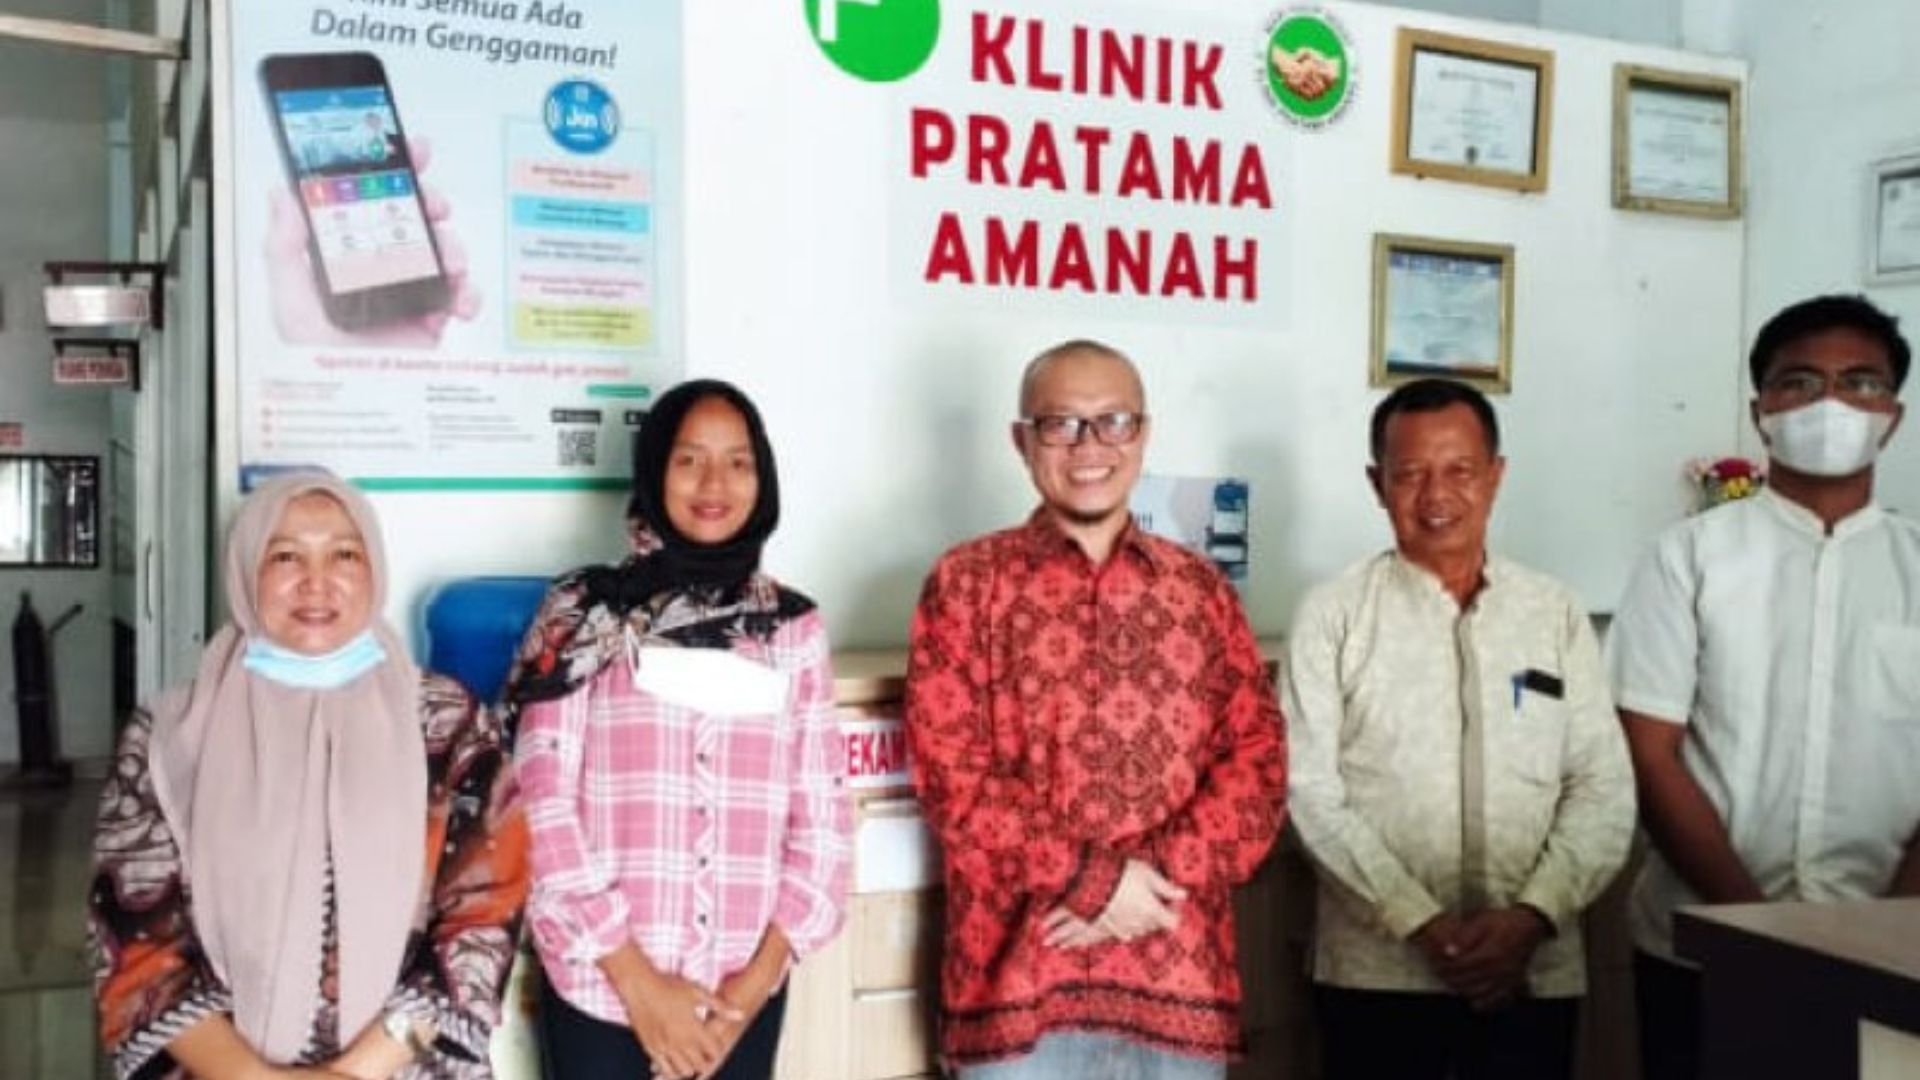 Lebarkan Sayap Hingga ke Sumatera Utara, Digital Hospital Gandeng Klinik Pratama Amanah